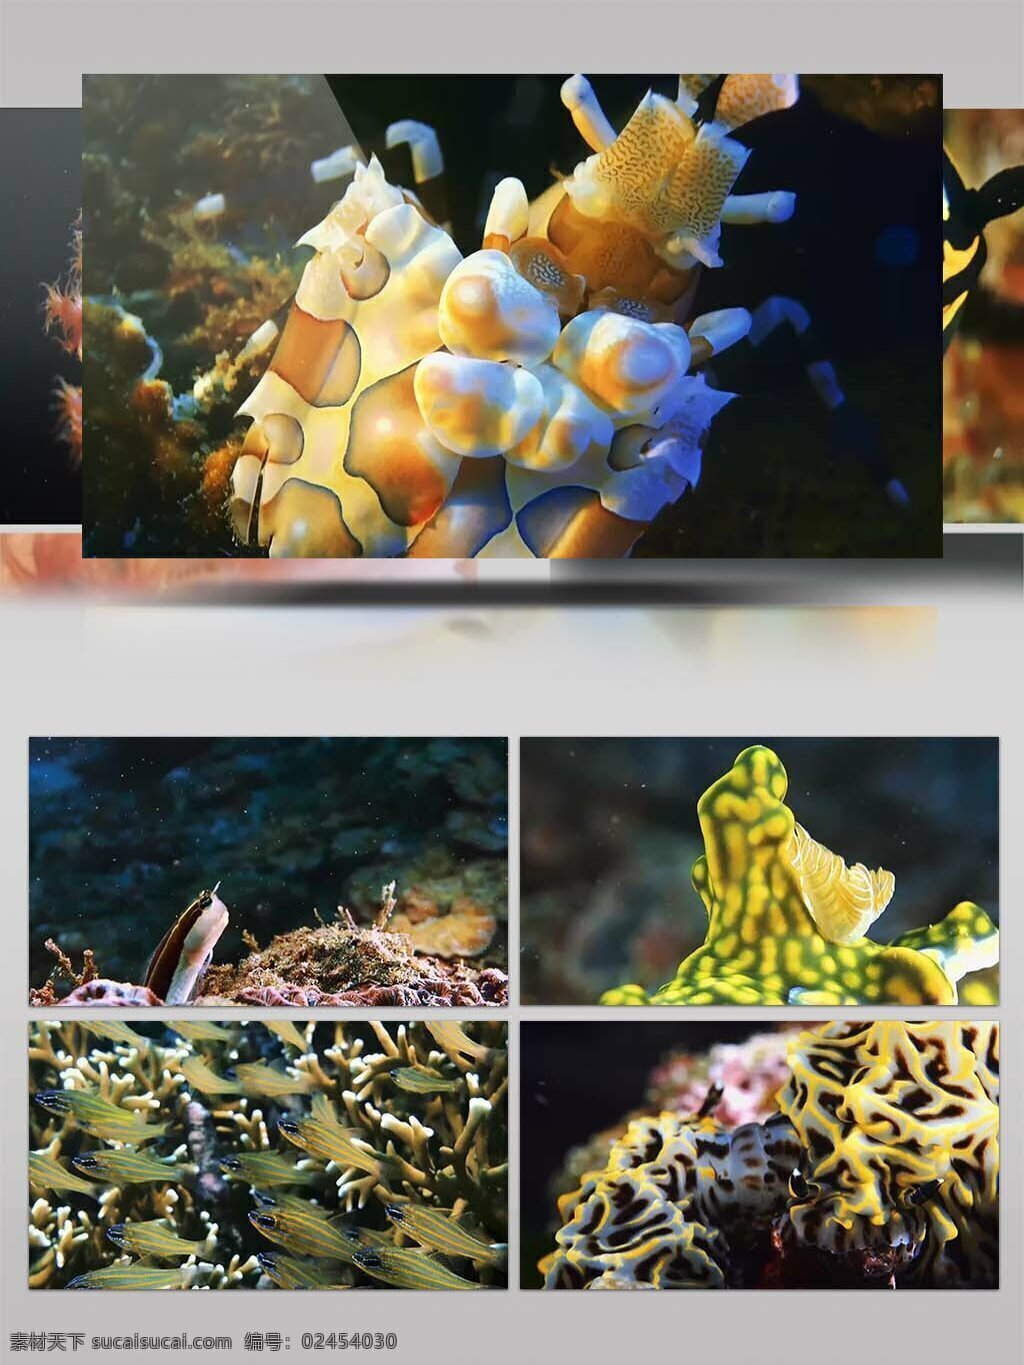 2k 超 清 海底 动物 生物 特写 镜头 实拍 视频 美丽的海底 潜水 鱼群 珊瑚 海边潜水 海边旅游宣传 海底世界 海洋世界 美丽的珊瑚 大海 视频素材 动物素材